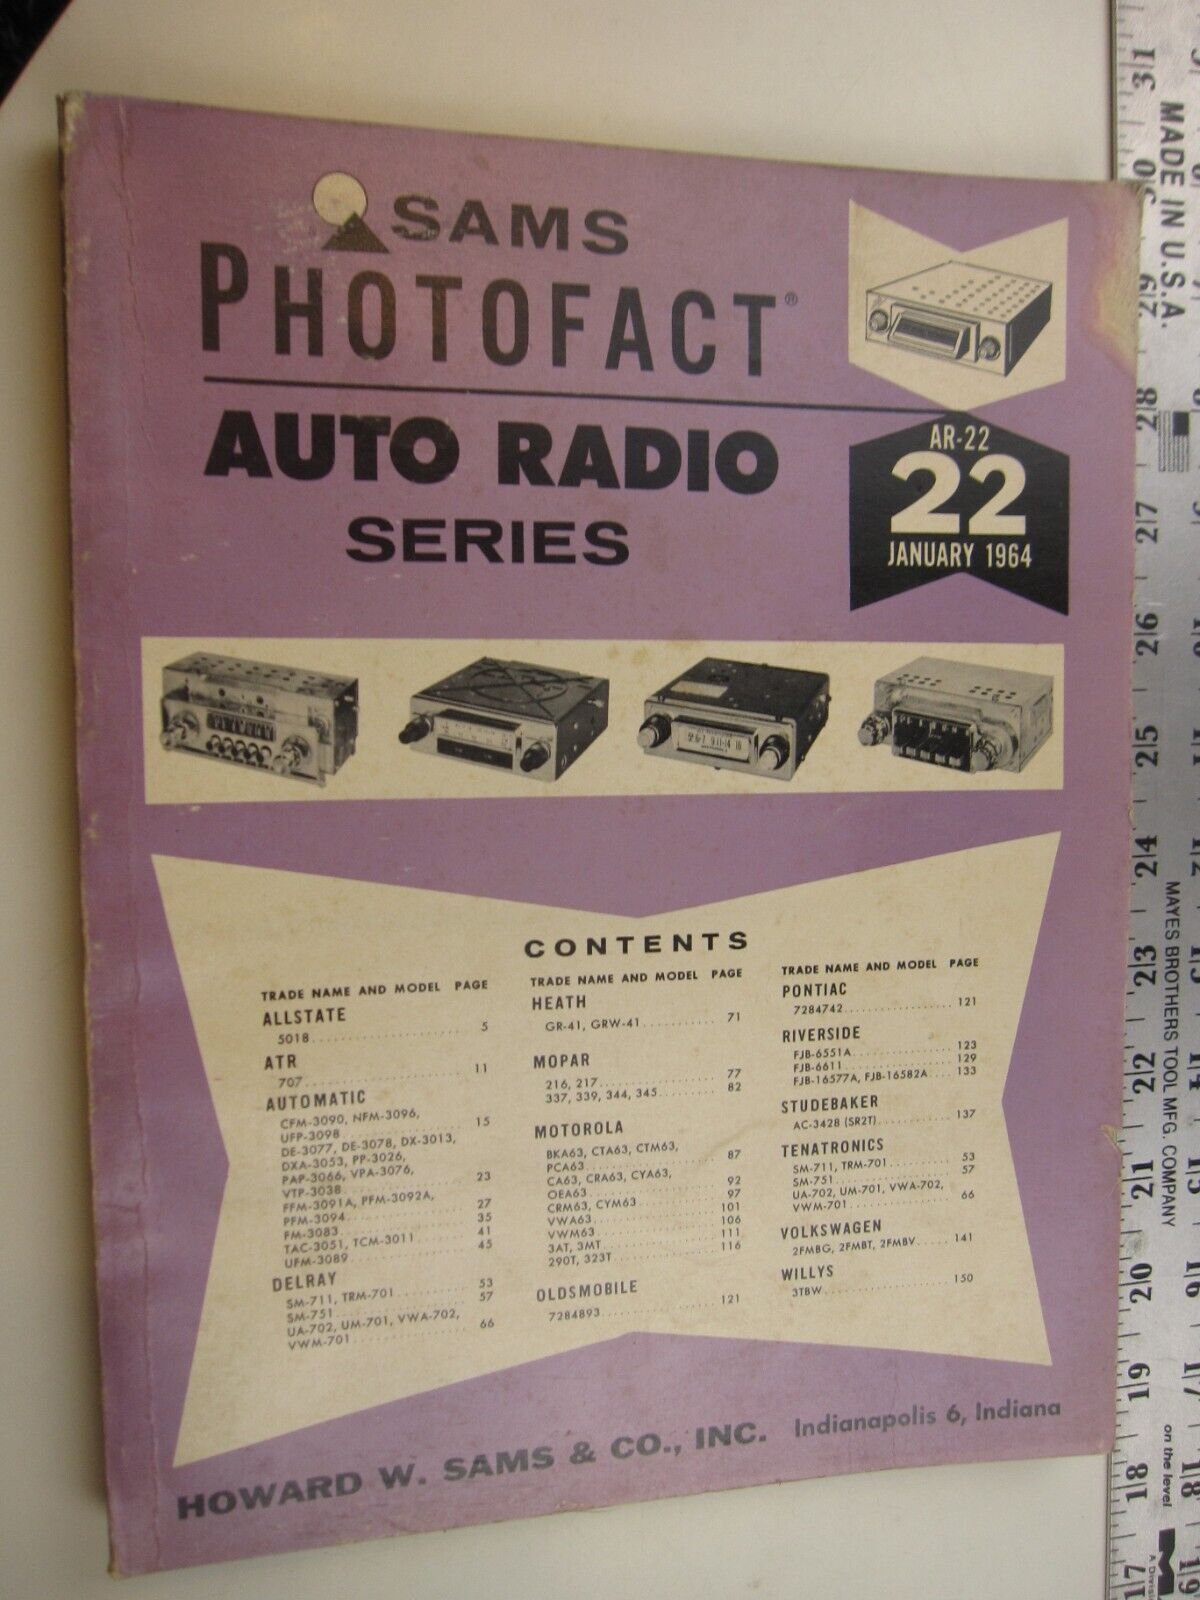 SF January 1964 Sams Photofact   AUTO RADIO Series AR-22 BIS